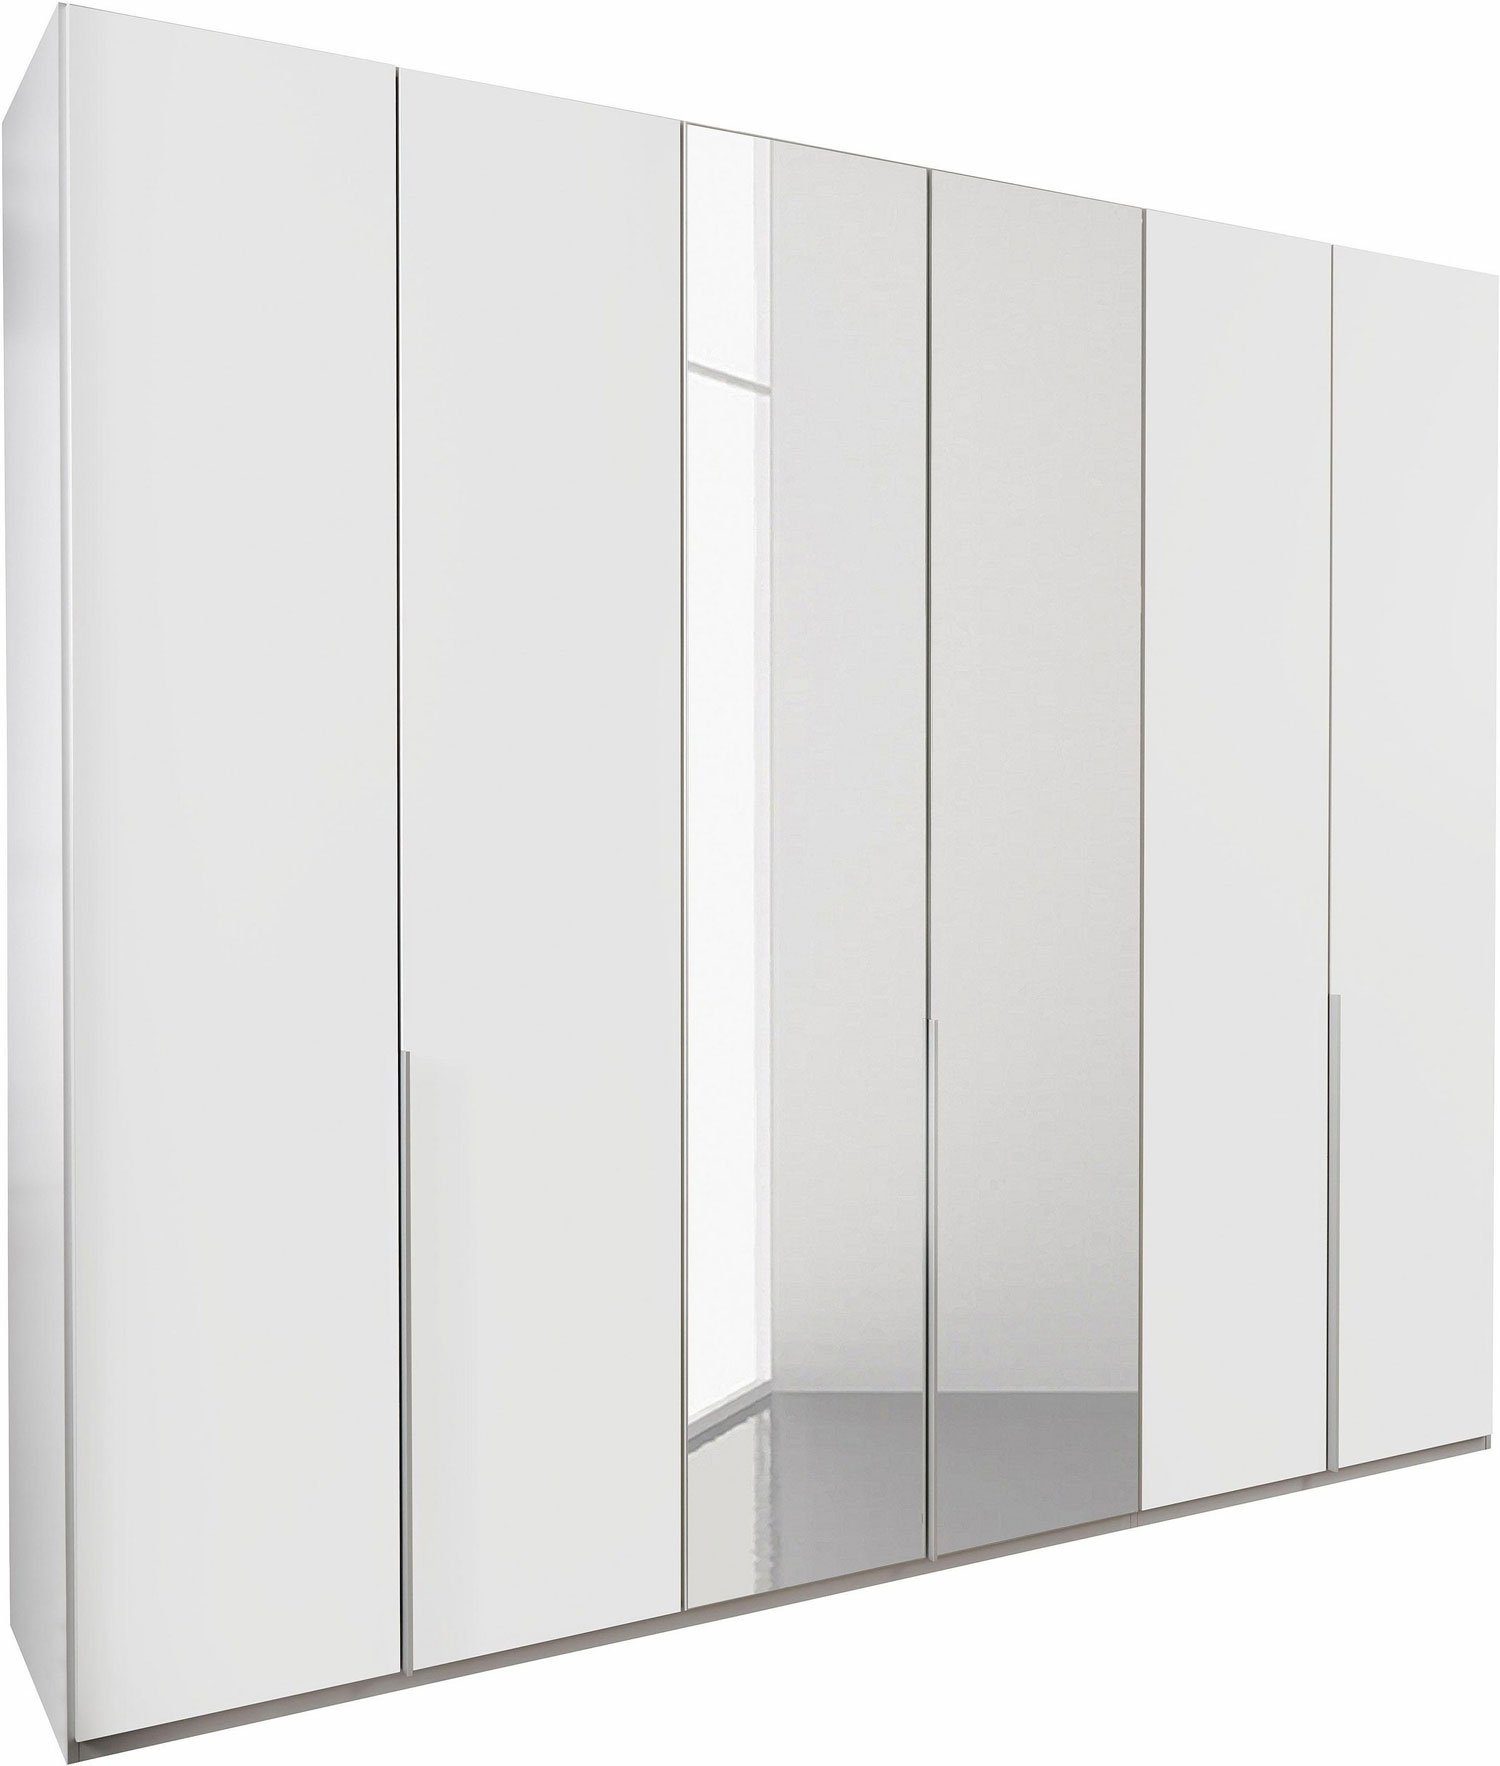 Wimex Kleiderschrank New York 270cm weiß Spiegel 6-türig mit Spiegel und  mit Schubladeneinsatz